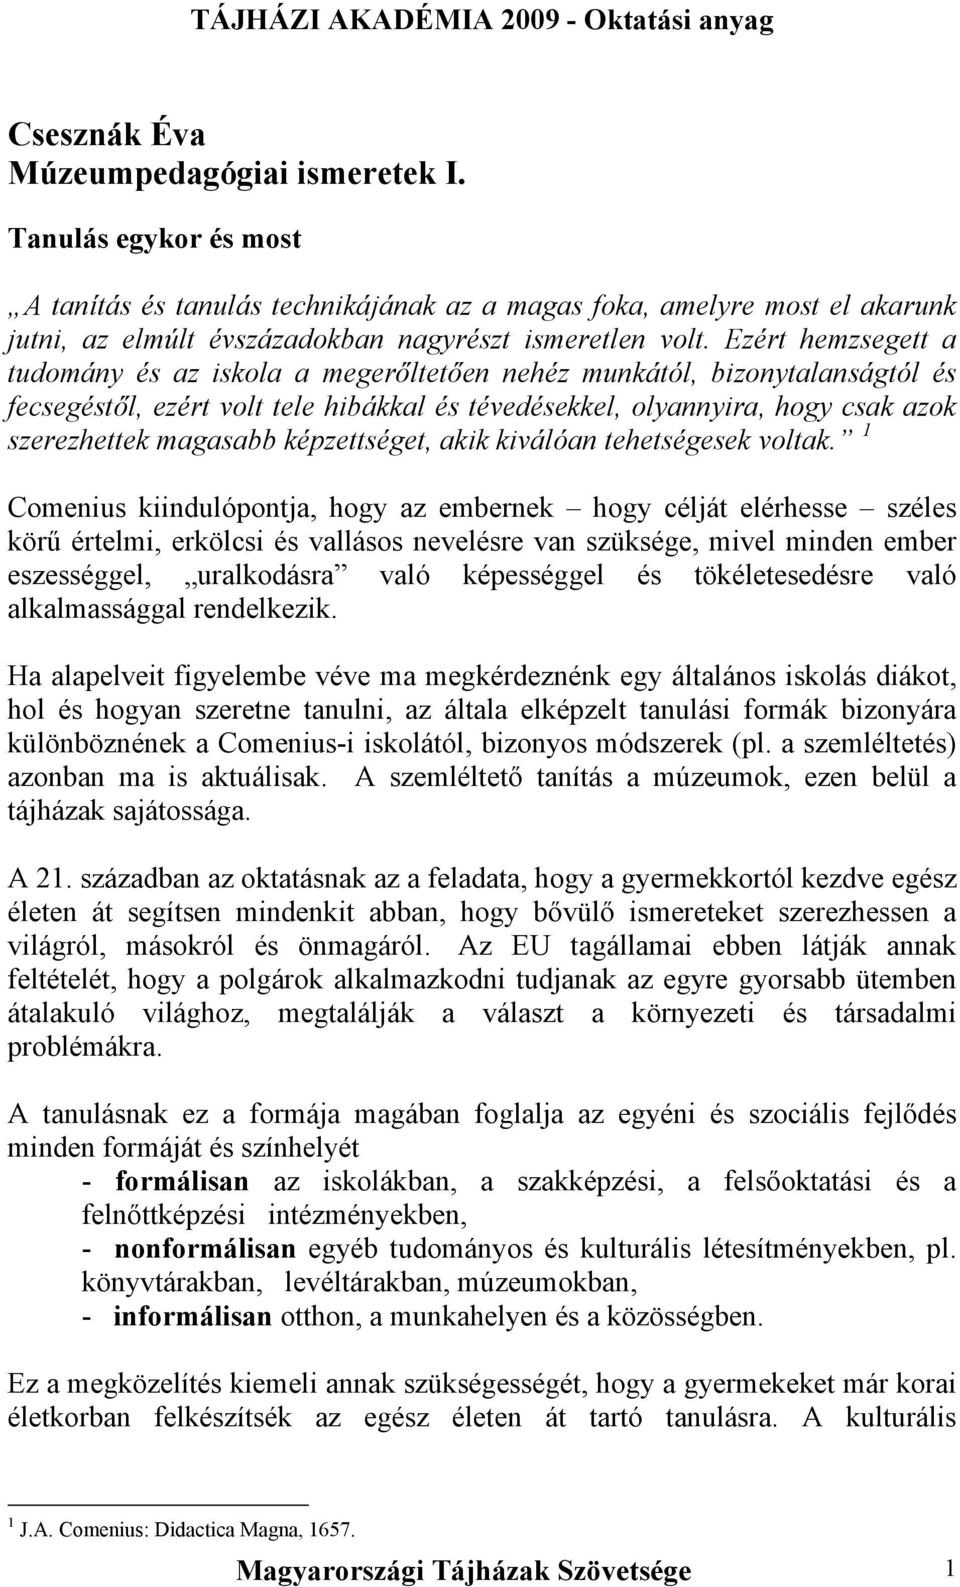 Csesznák Éva Múzeumpedagógiai ismeretek I. - PDF Ingyenes letöltés